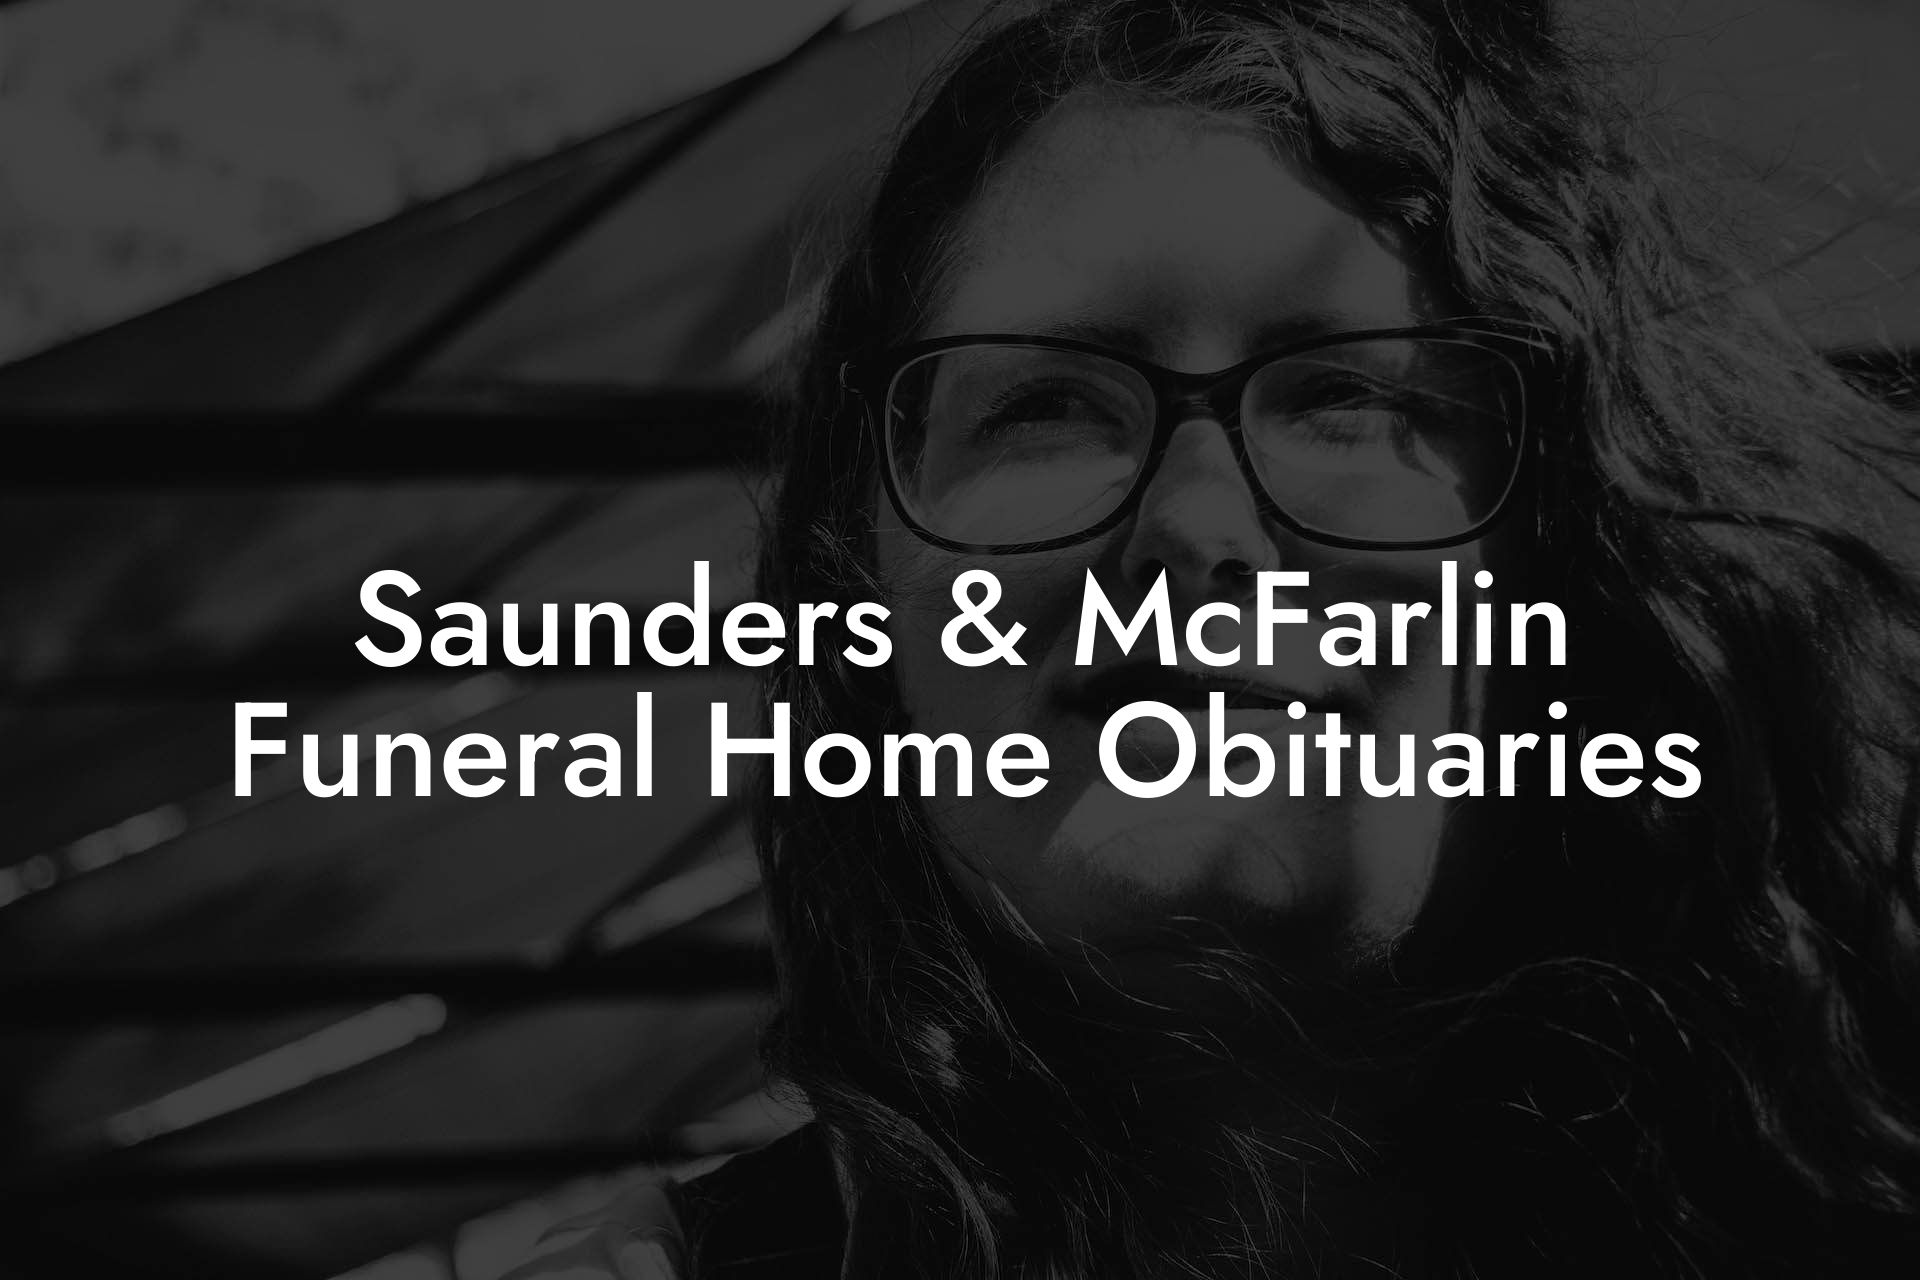 Saunders & McFarlin Funeral Home Obituaries